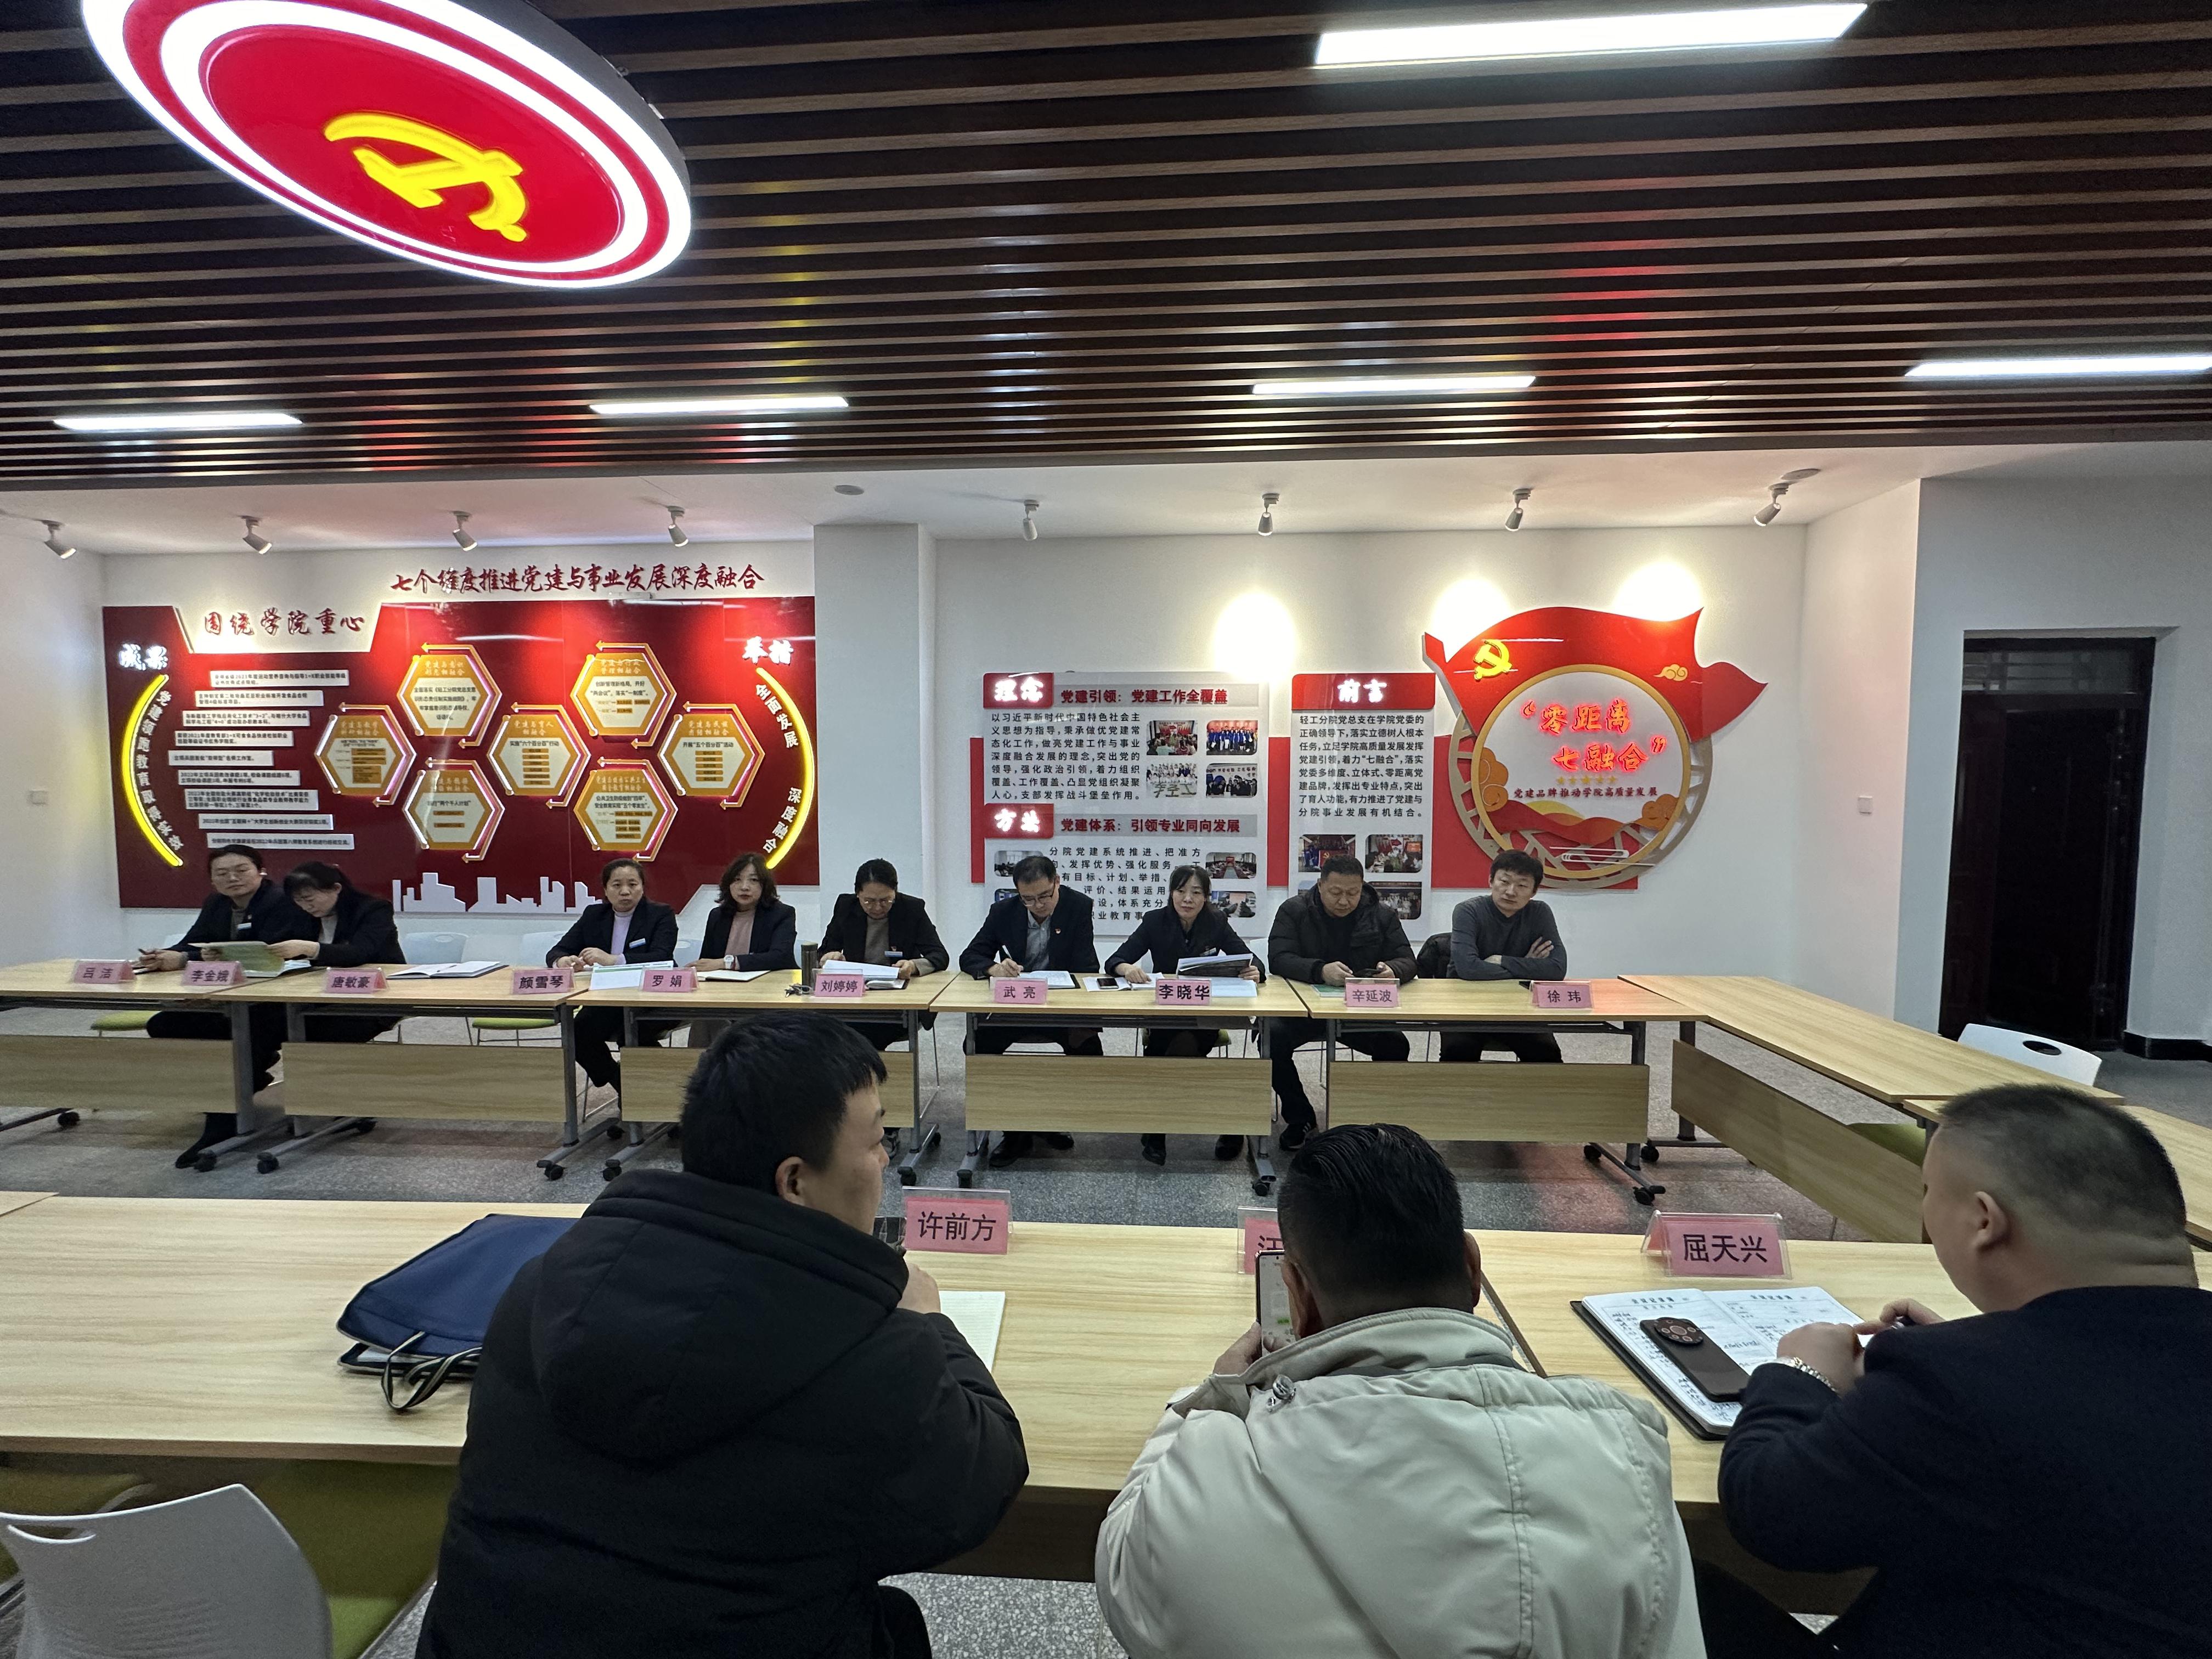 新疆疆纳能源科技集团领导一行莅临食品工程学院（化工与环境工程学院）座谈交流